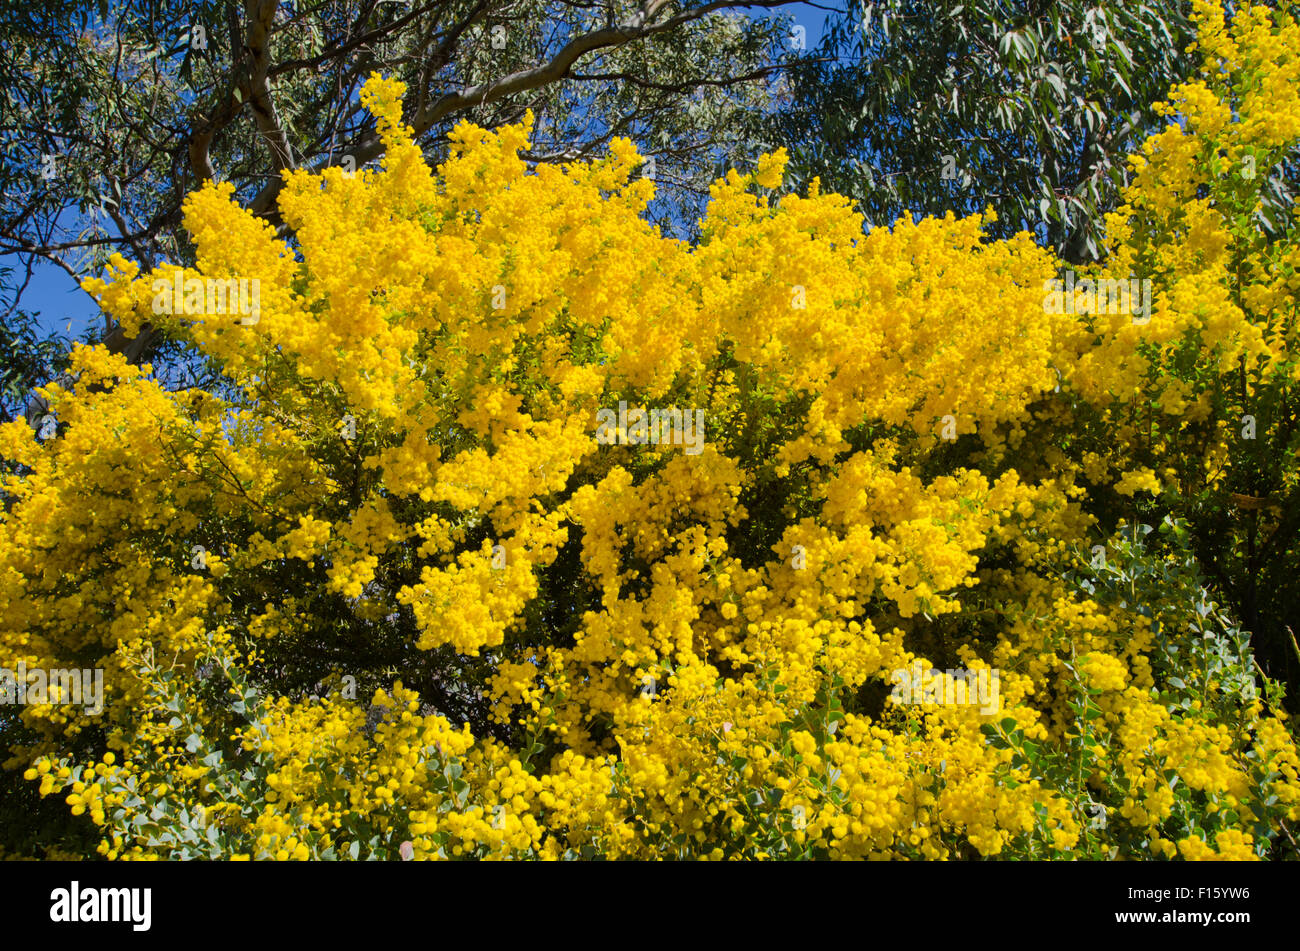 Graticcio, Australia nazionale emblema floreale che rappresenta anche i colori nazionali di verde e oro. Foto Stock